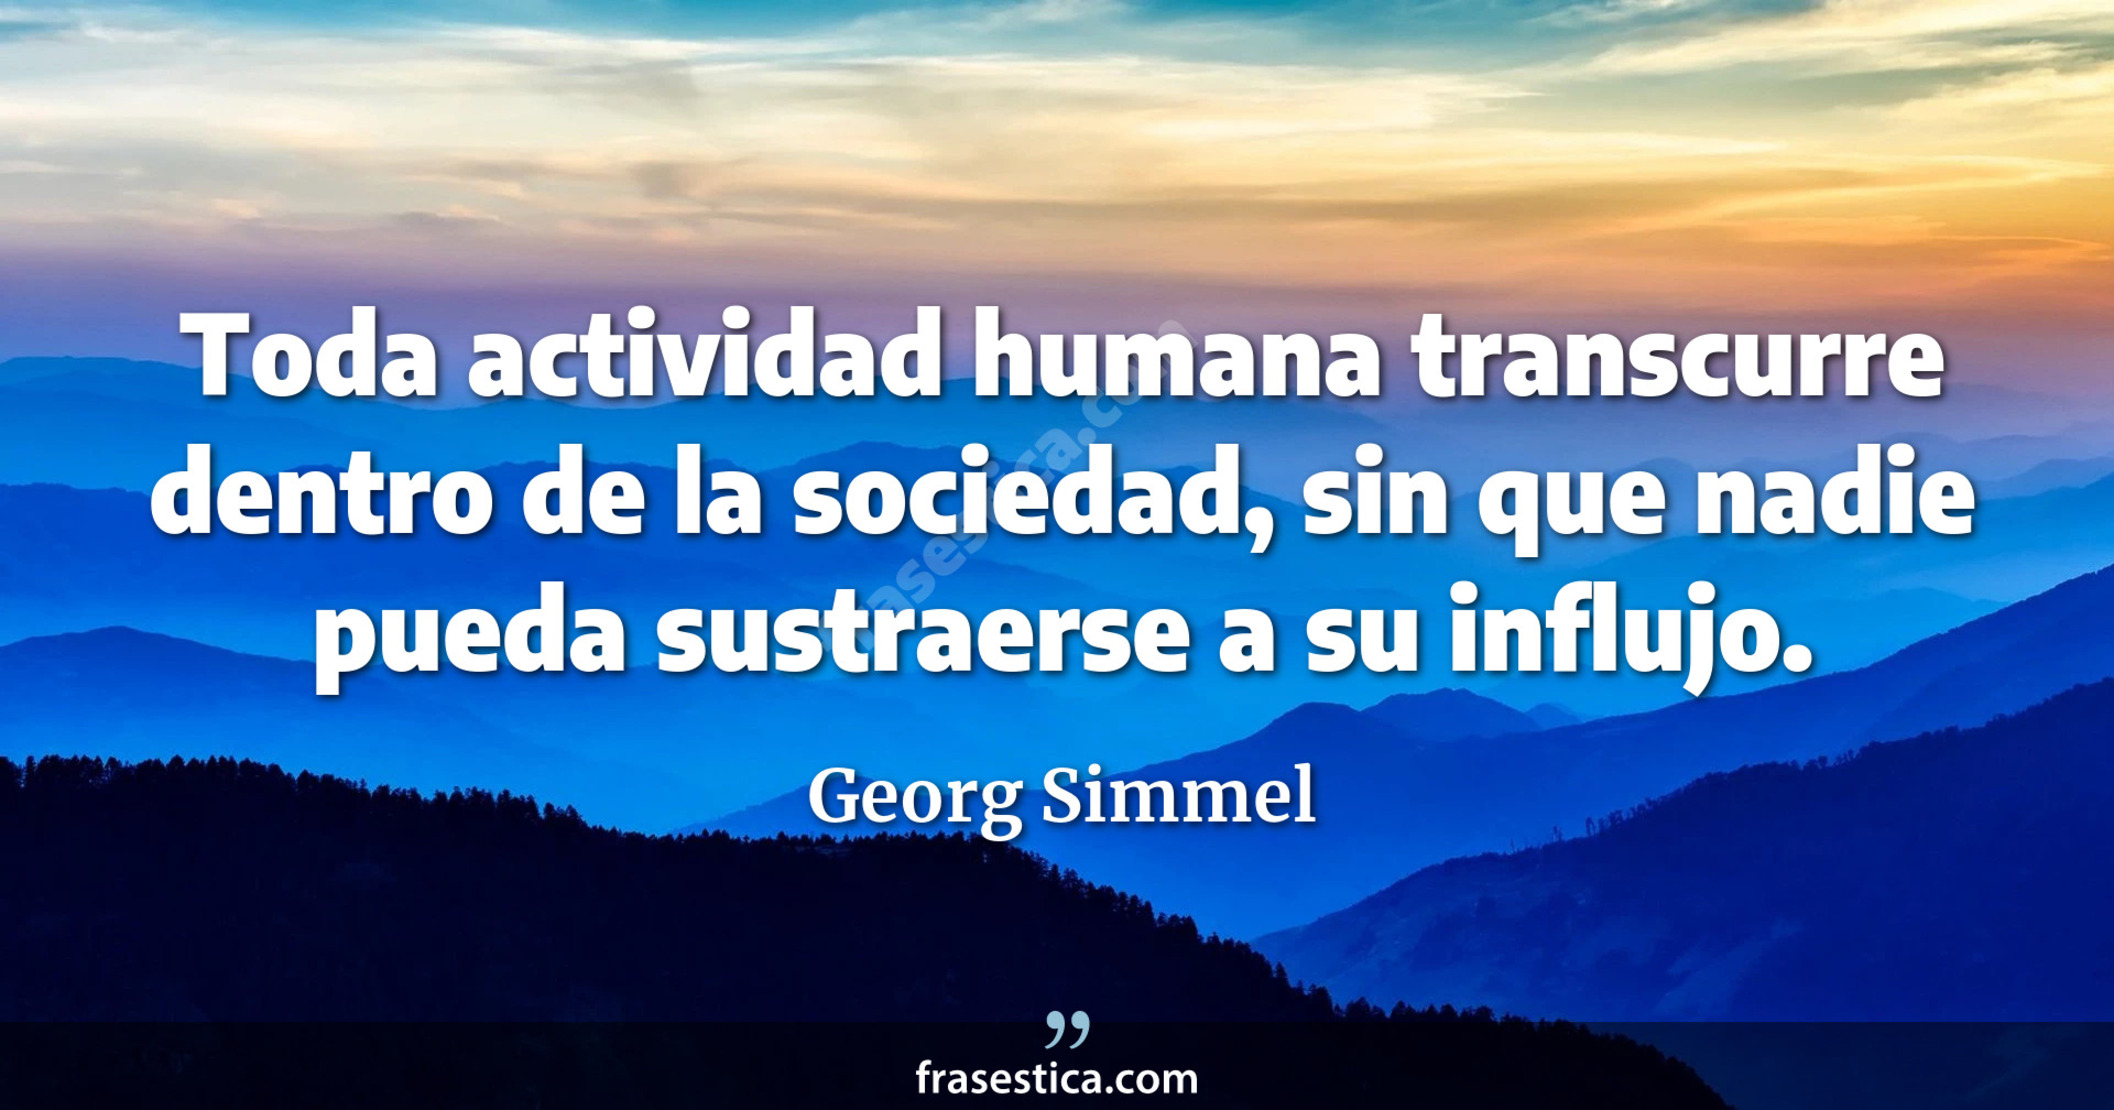 Toda actividad humana transcurre dentro de la sociedad, sin que nadie pueda sustraerse a su influjo. - Georg Simmel